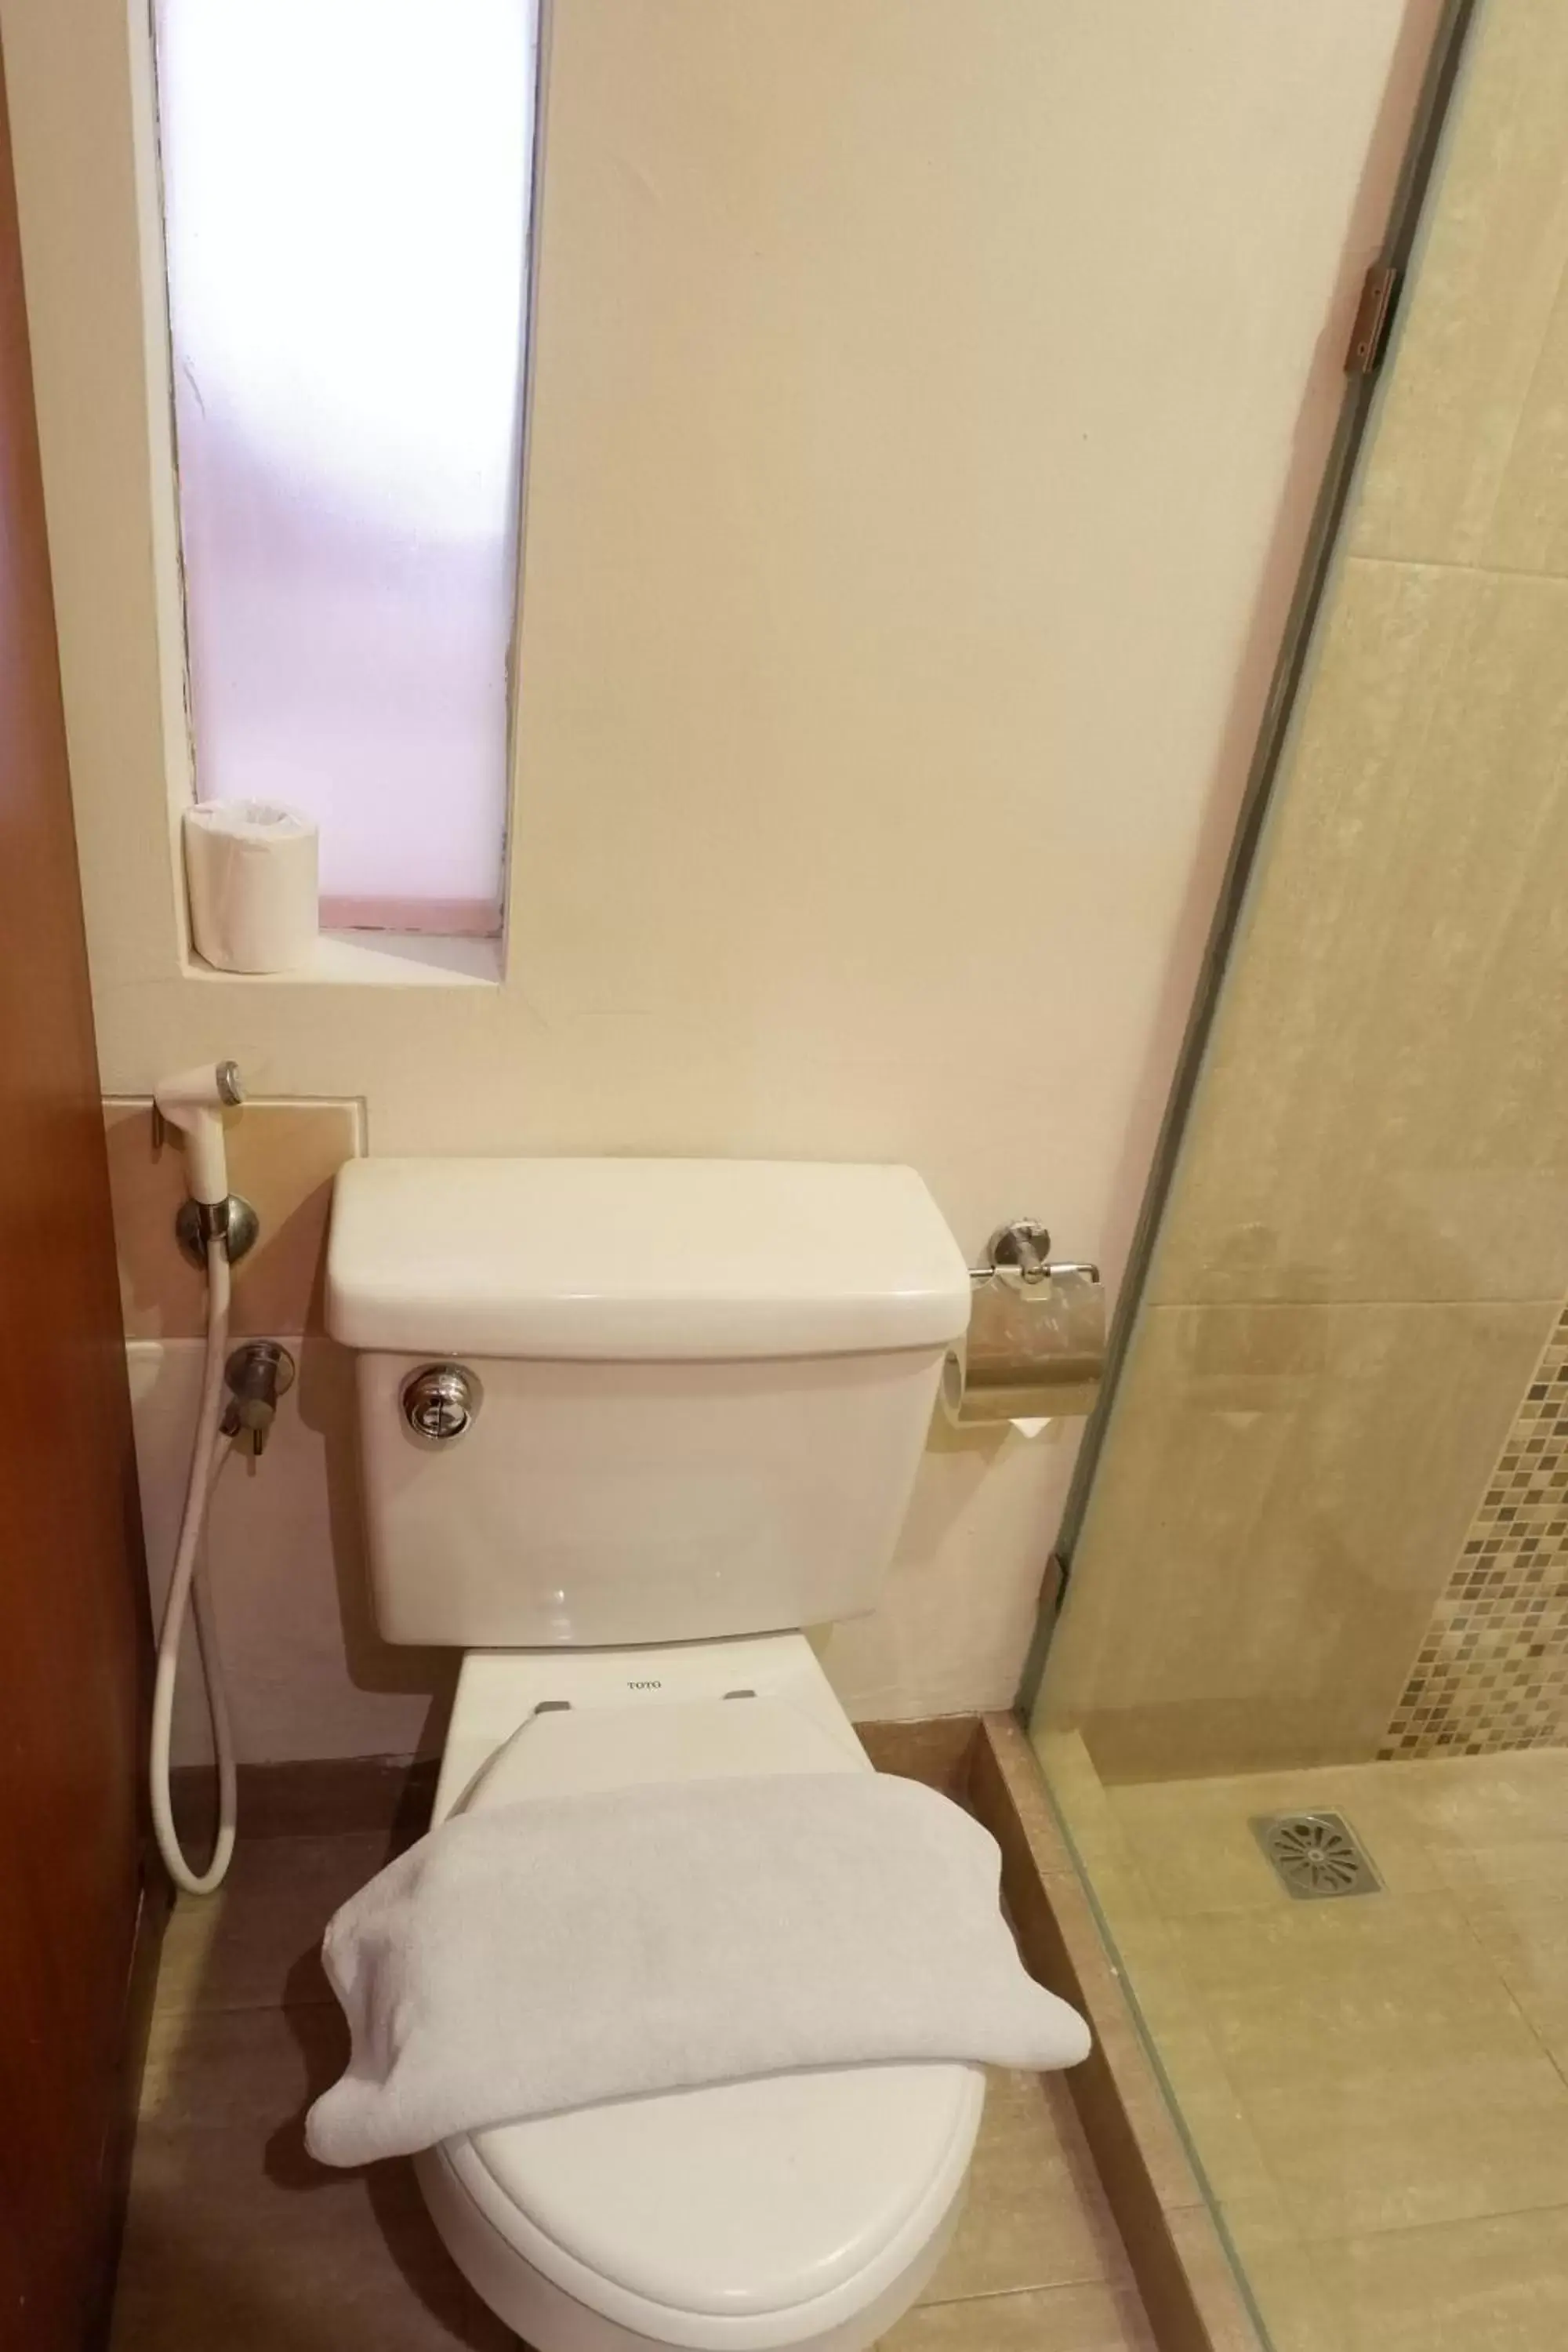 Toilet, Bathroom in ibis Styles Bali Legian - CHSE Certified